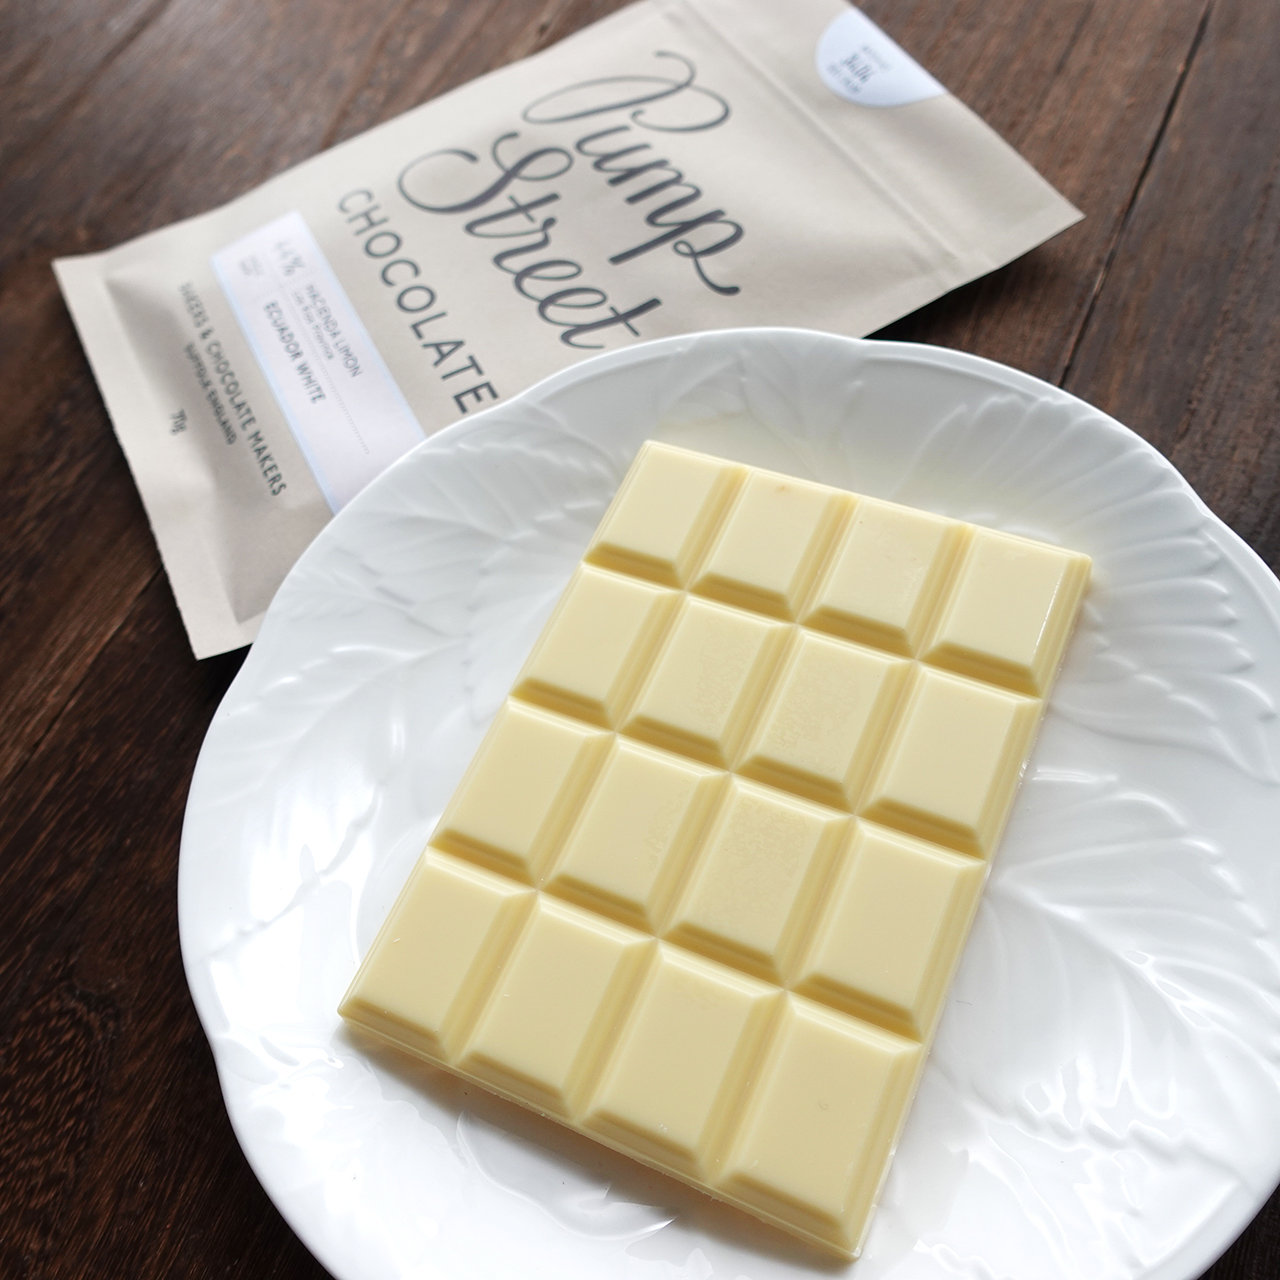 【新商品】パン屋さんが作るチョコレートメーカー「パンプストリートベーカリーチョコレート」より新作登場